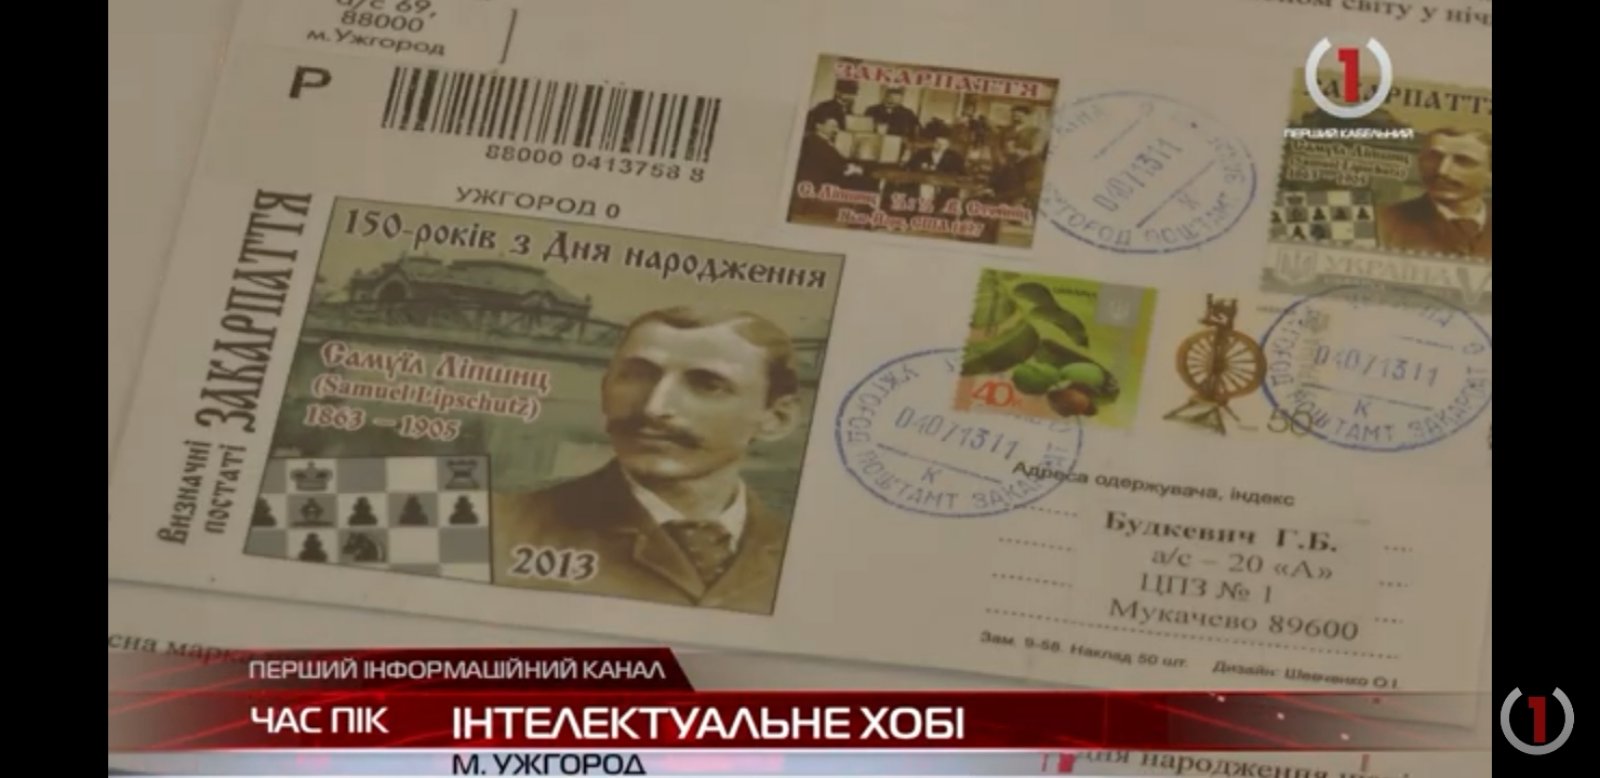 Інтелектуальне хобі: колекціонування марок в Ужгороді (ВІДЕО)